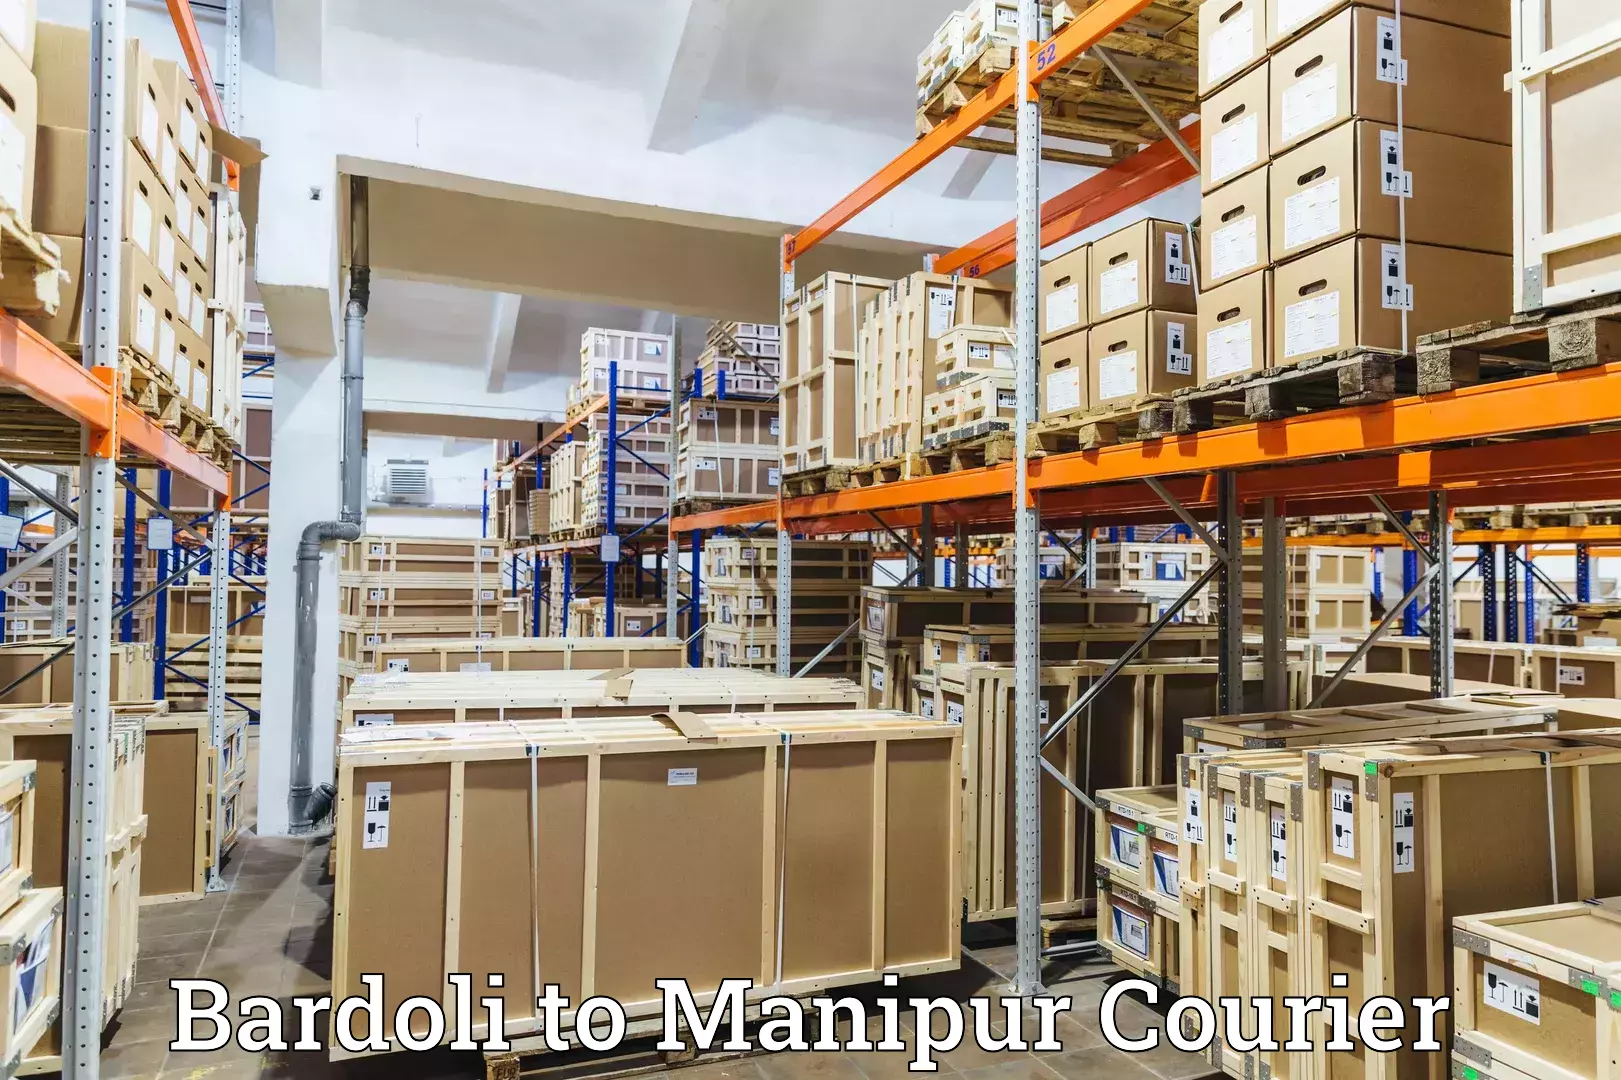 Courier service comparison Bardoli to IIIT Senapati